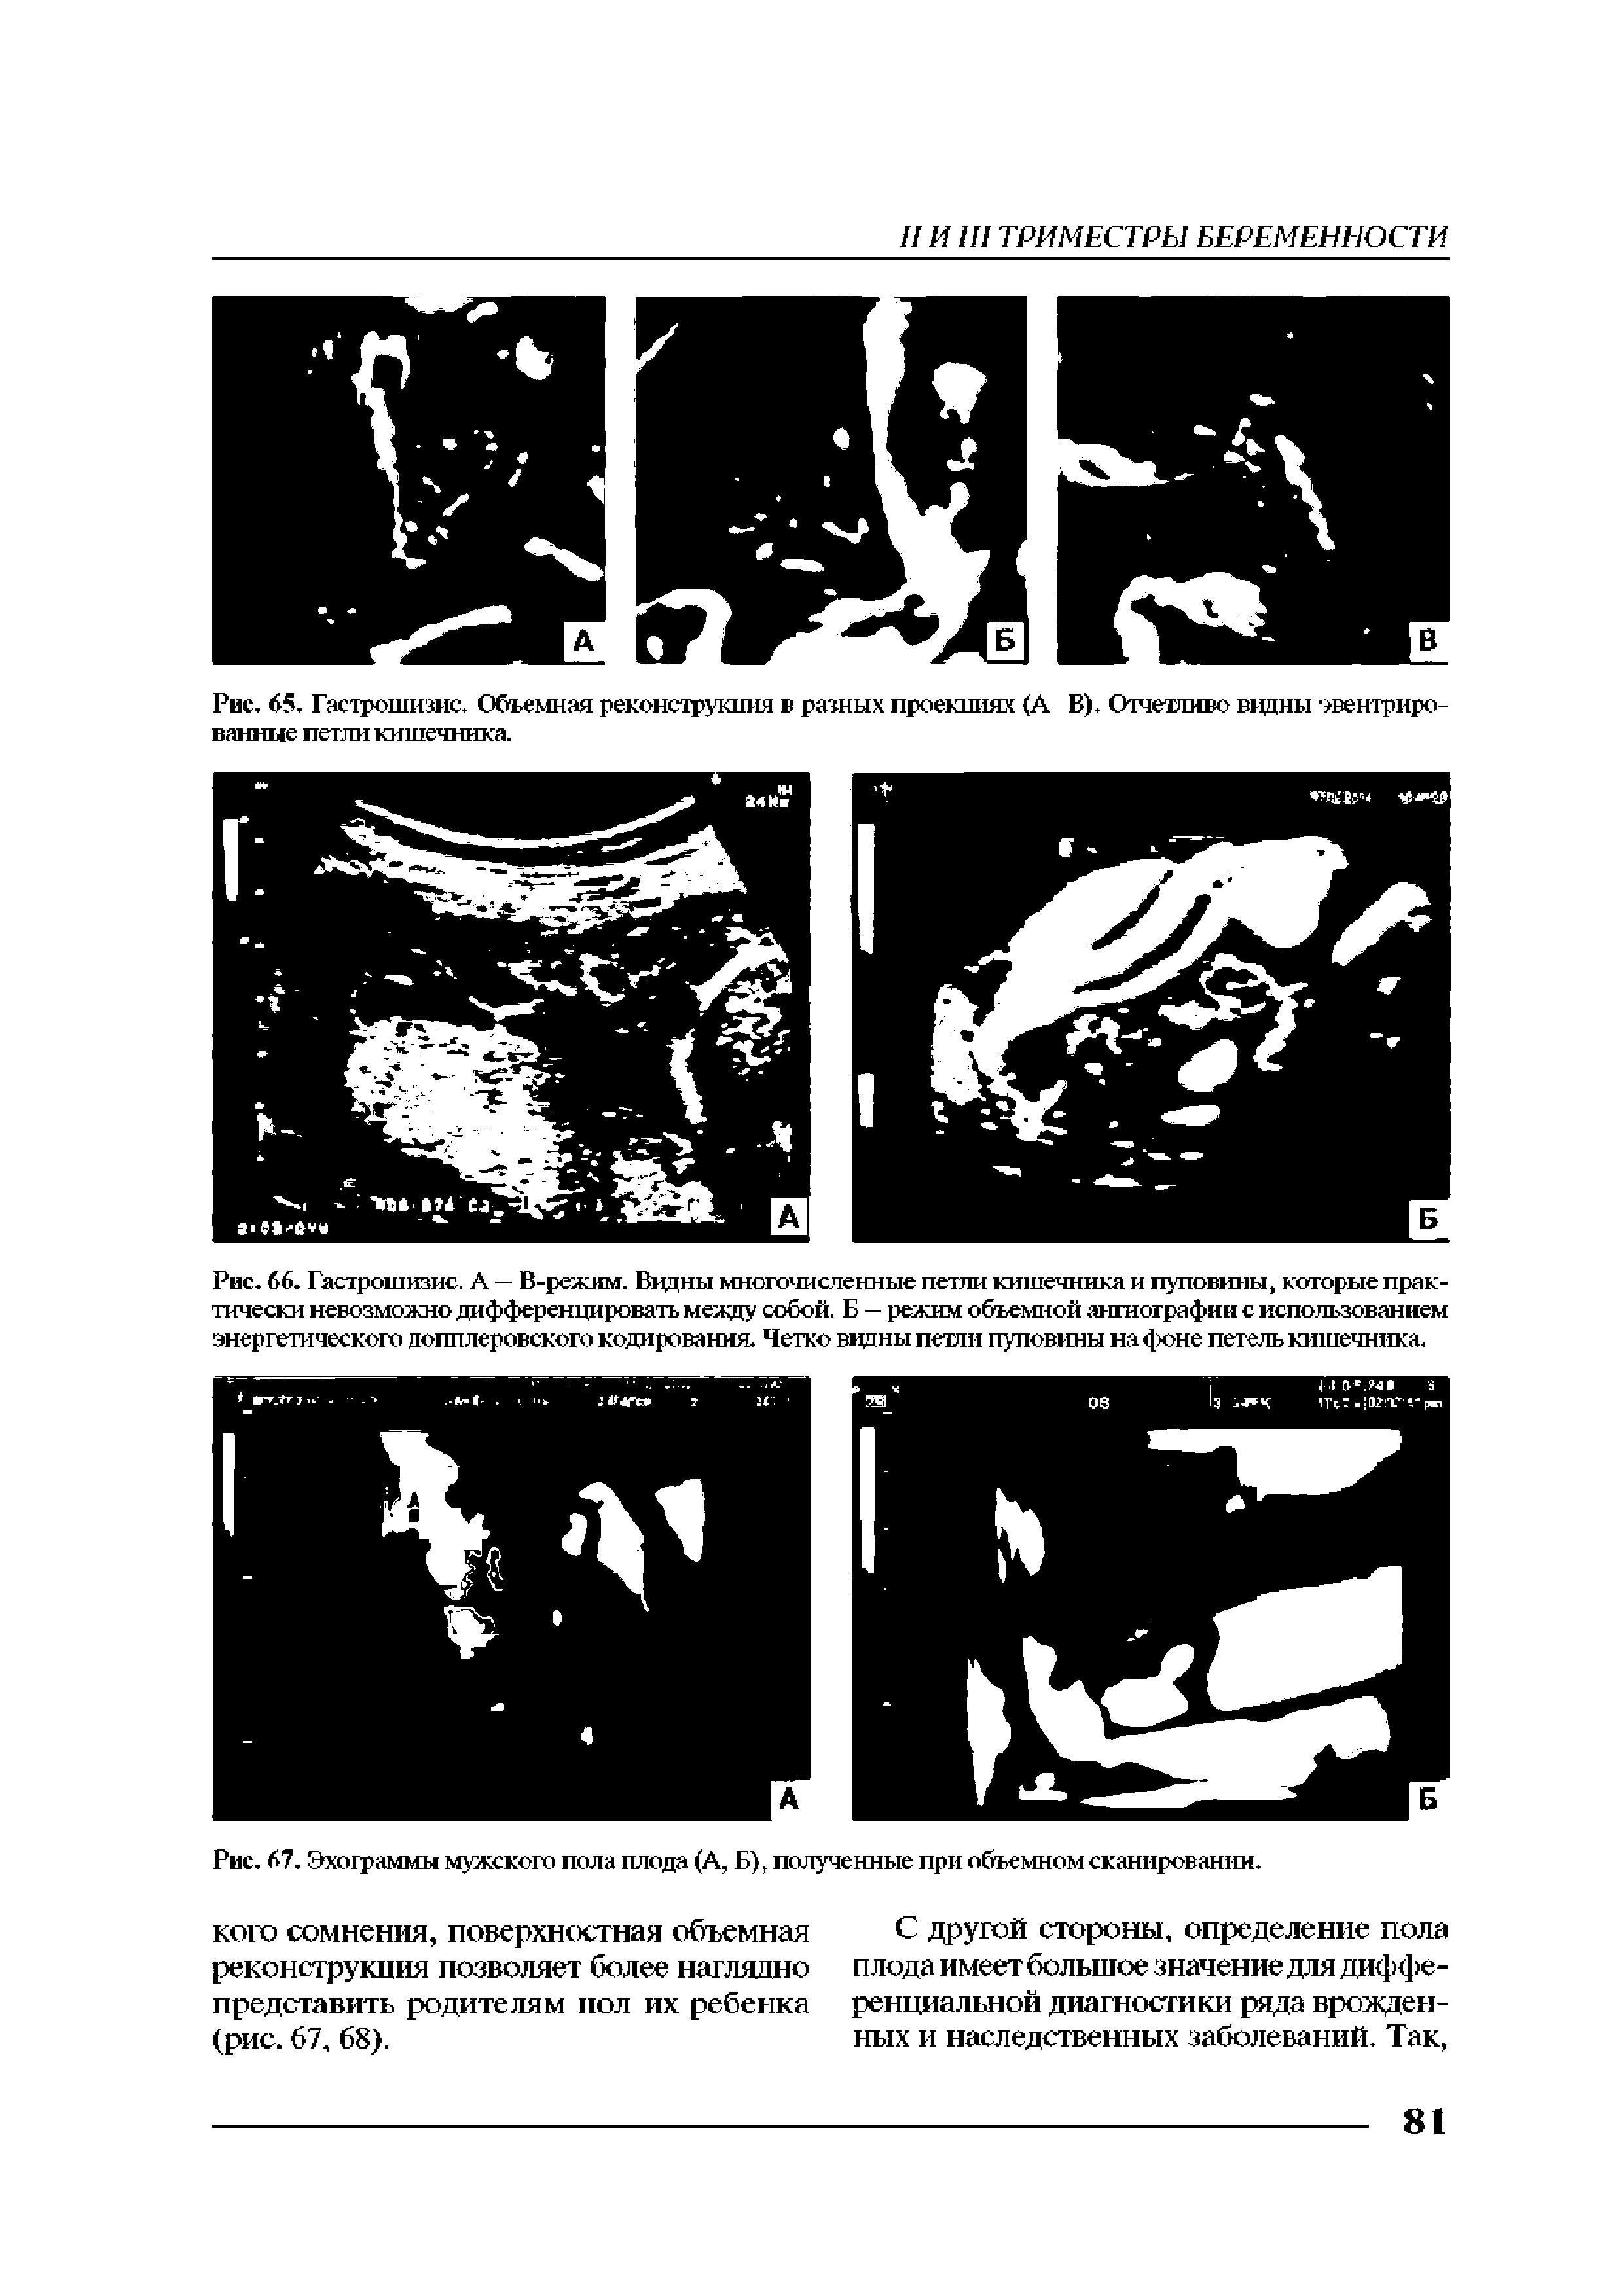 Рис. 67. Эхограммы мужского пола плода (А, Б), полученные при объемном сканировании.